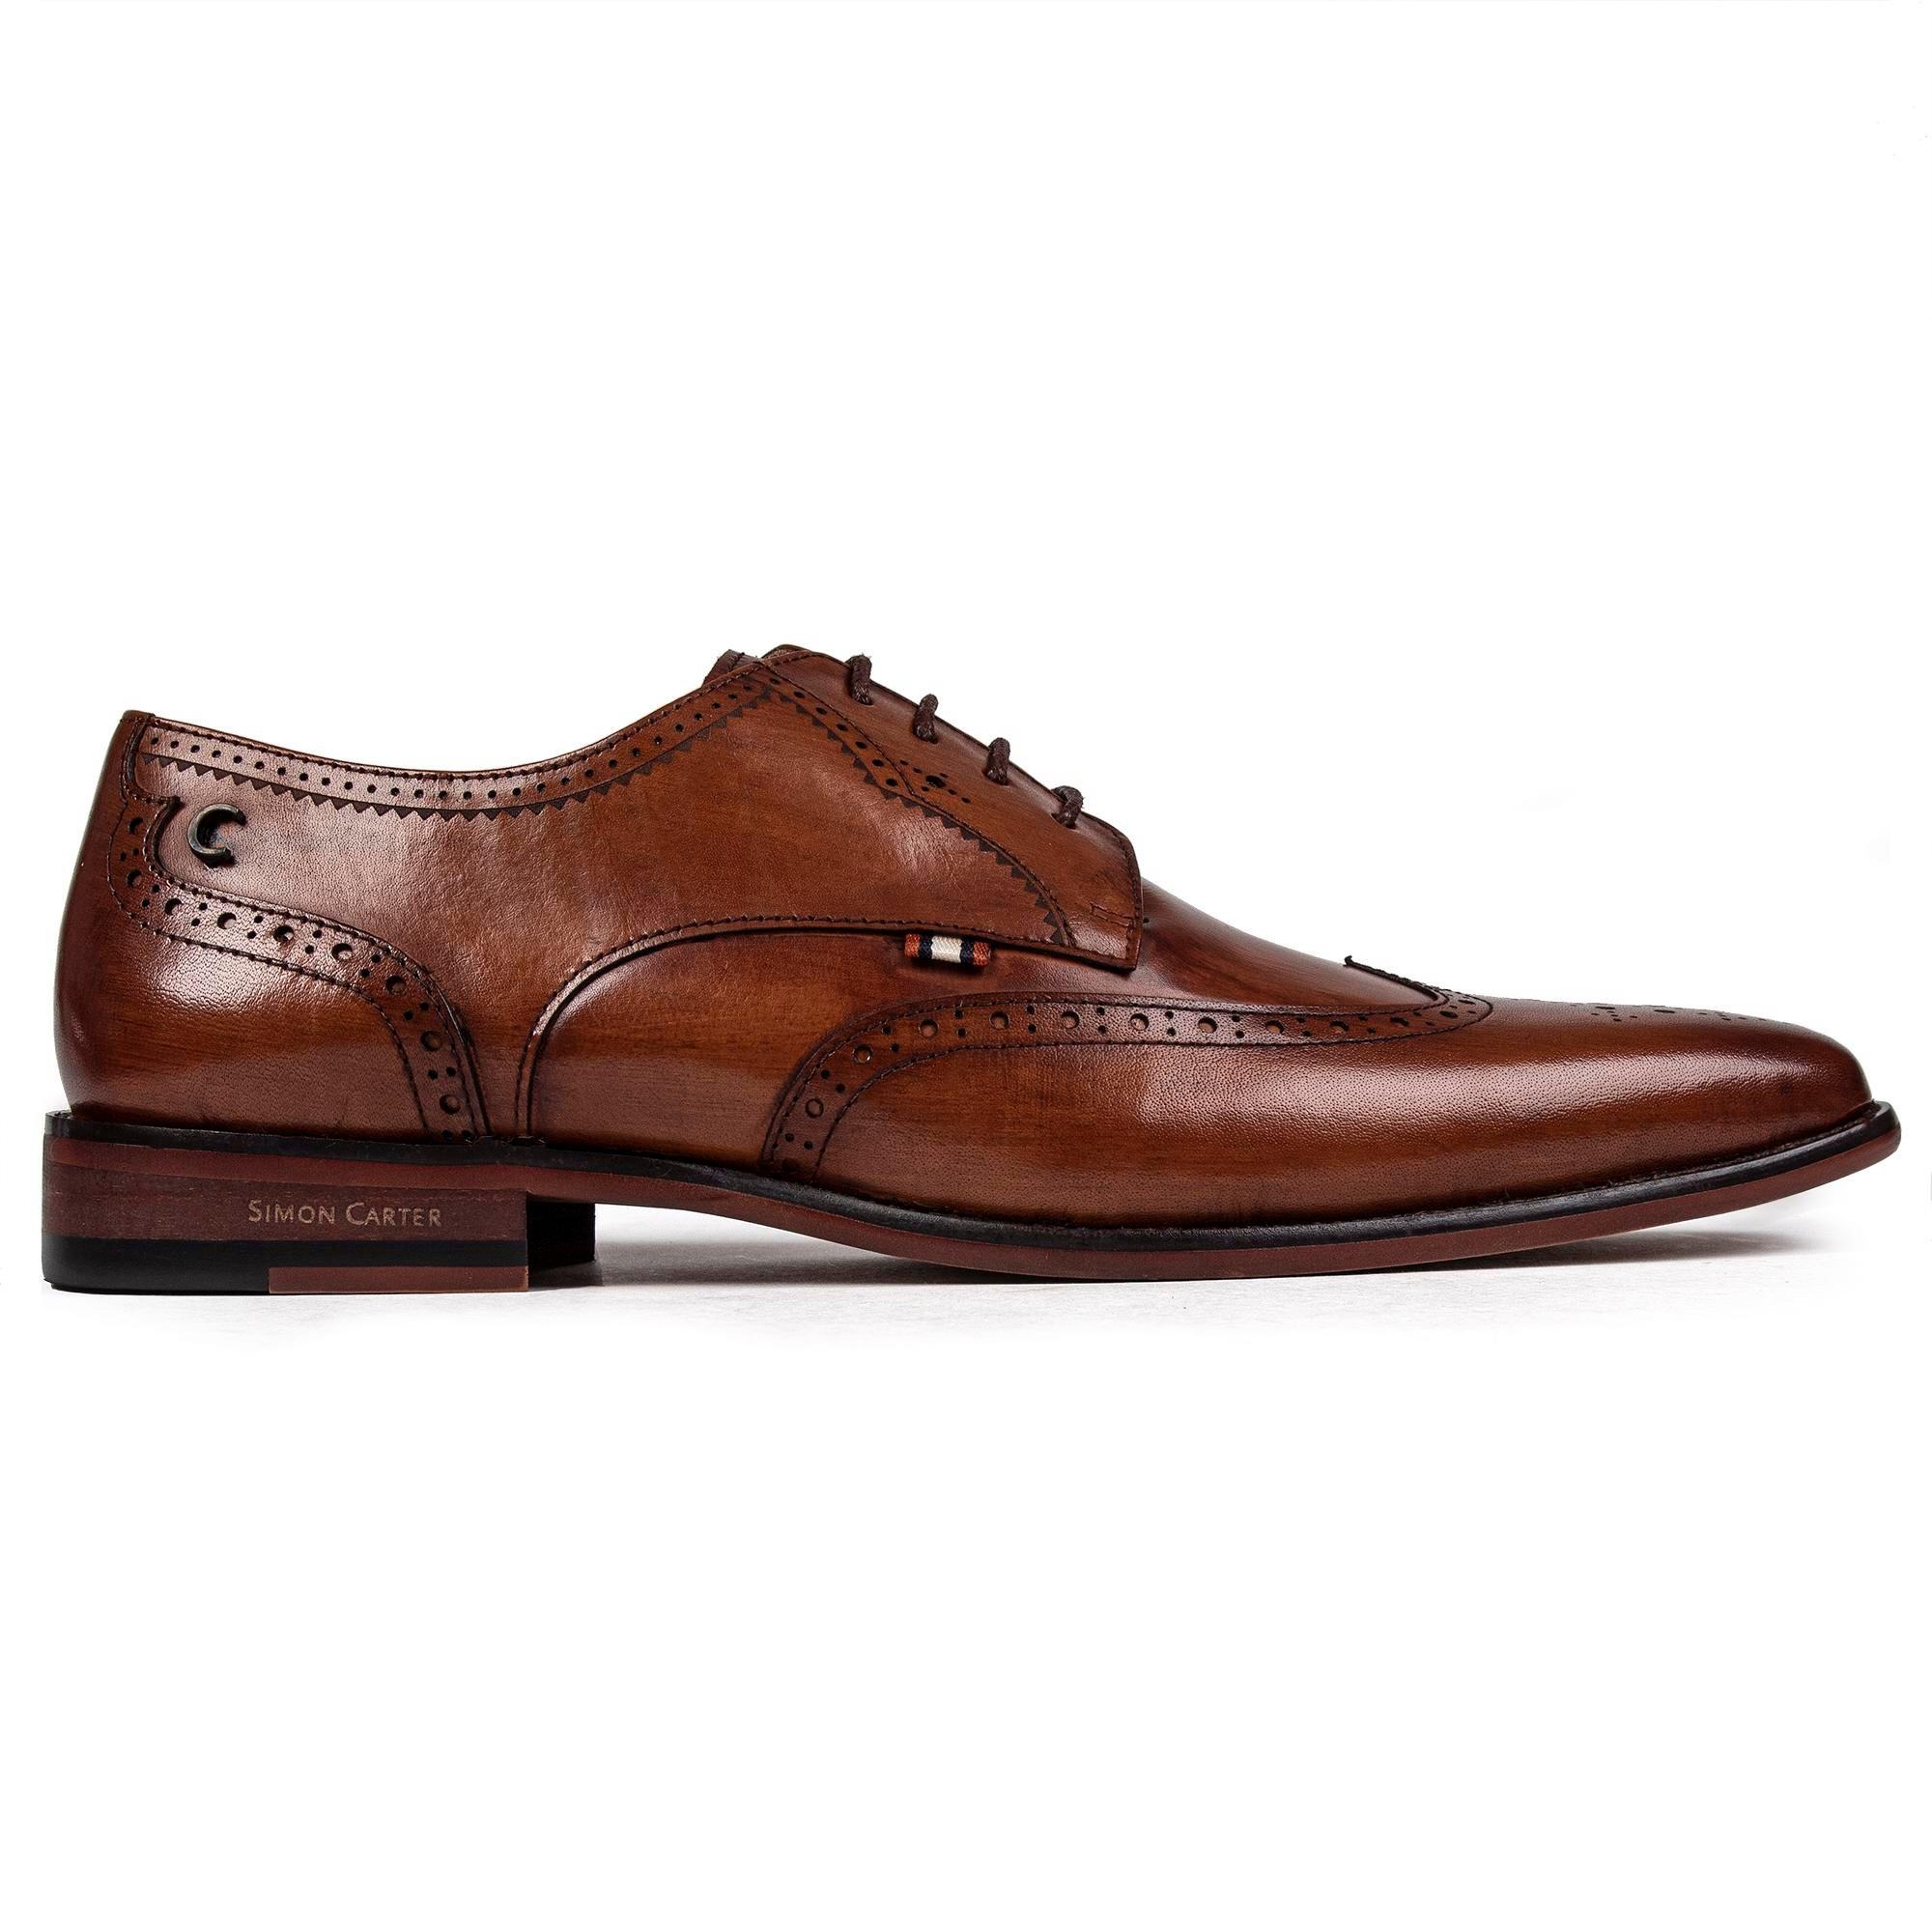 Обувь Бигль SIMON CARTER, коричневый туфли мужские классические кожаные деловые на шнуровке заостренный носок британская мода роскошные ручная работа весна лето 2021